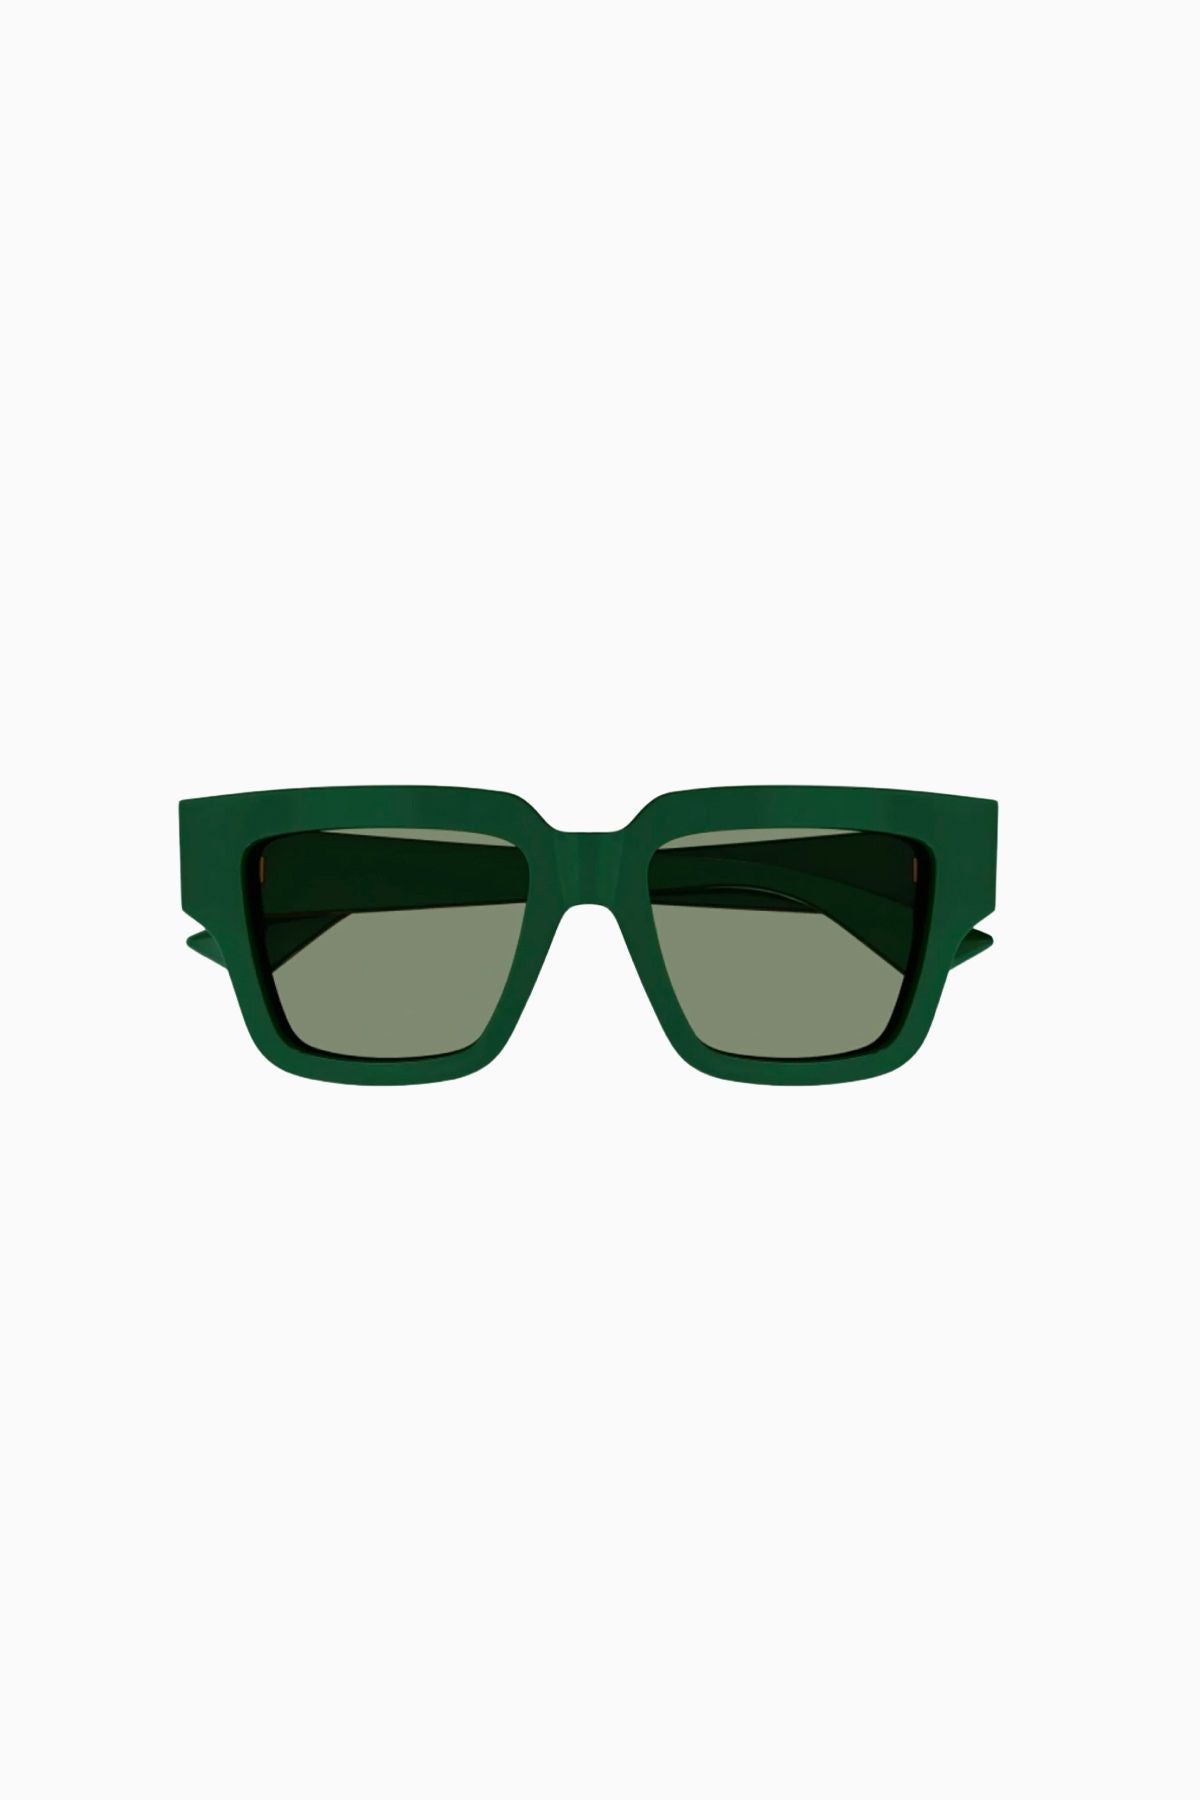 Bottega Veneta Square Oversized Sunglasses - Green